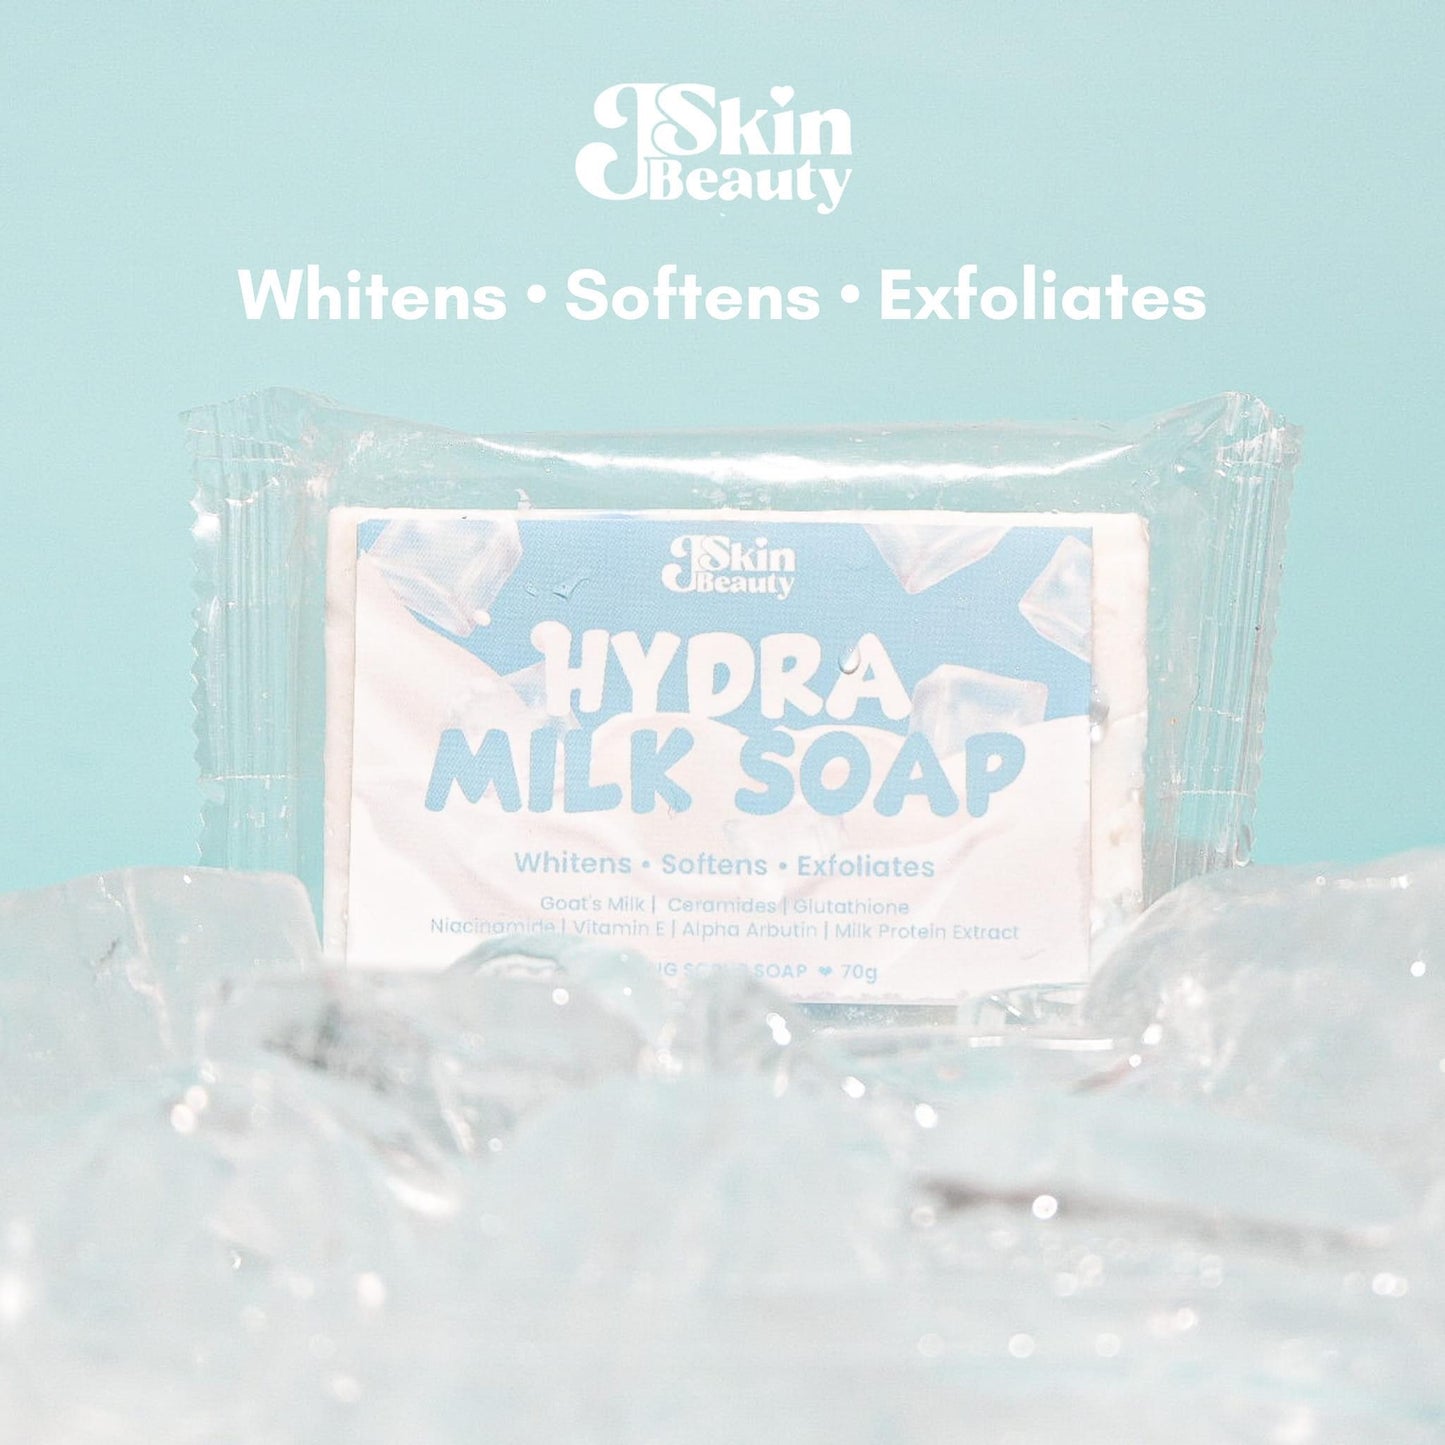 Hydra Milk Soap by Jskin 70g